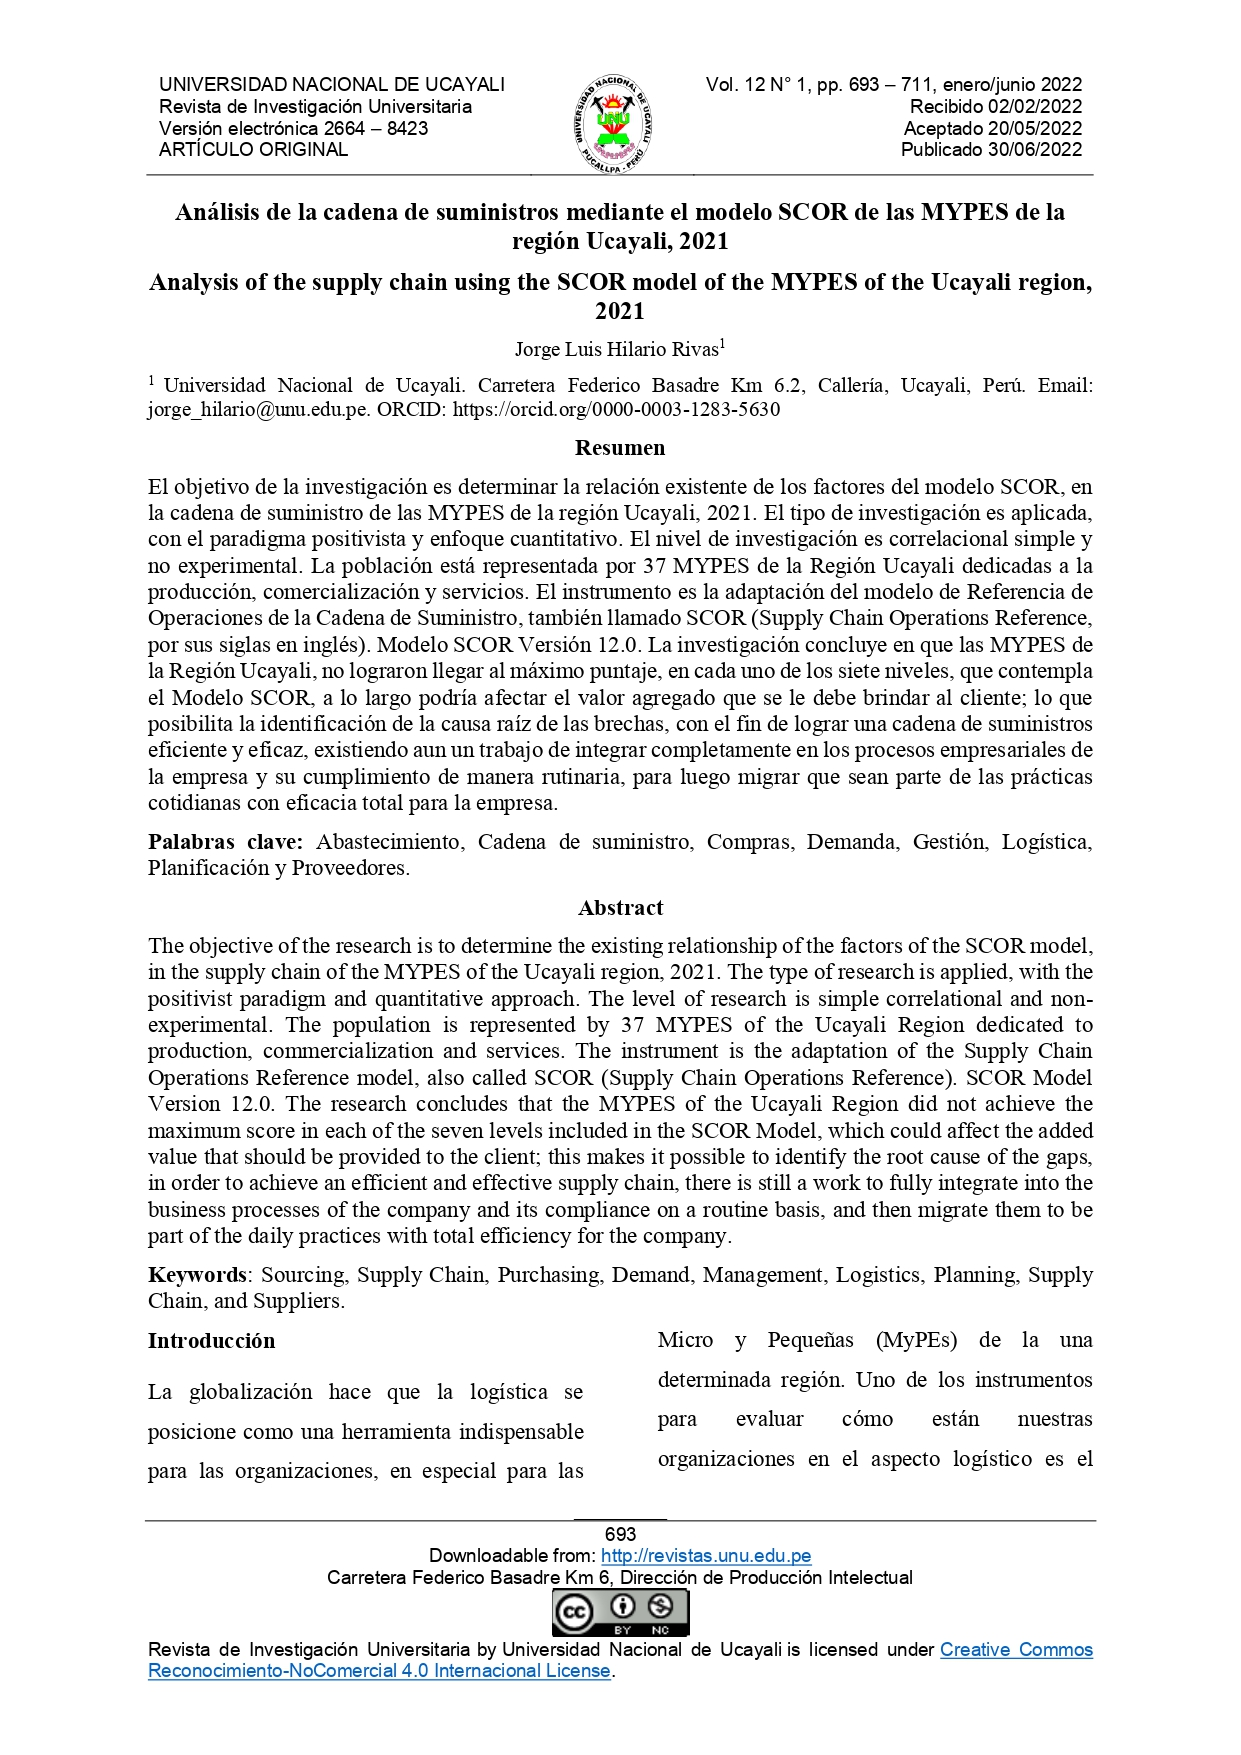 Análisis de la cadena de suministros mediante el modelo SCOR de las MYPES de la región Ucayali, 2021